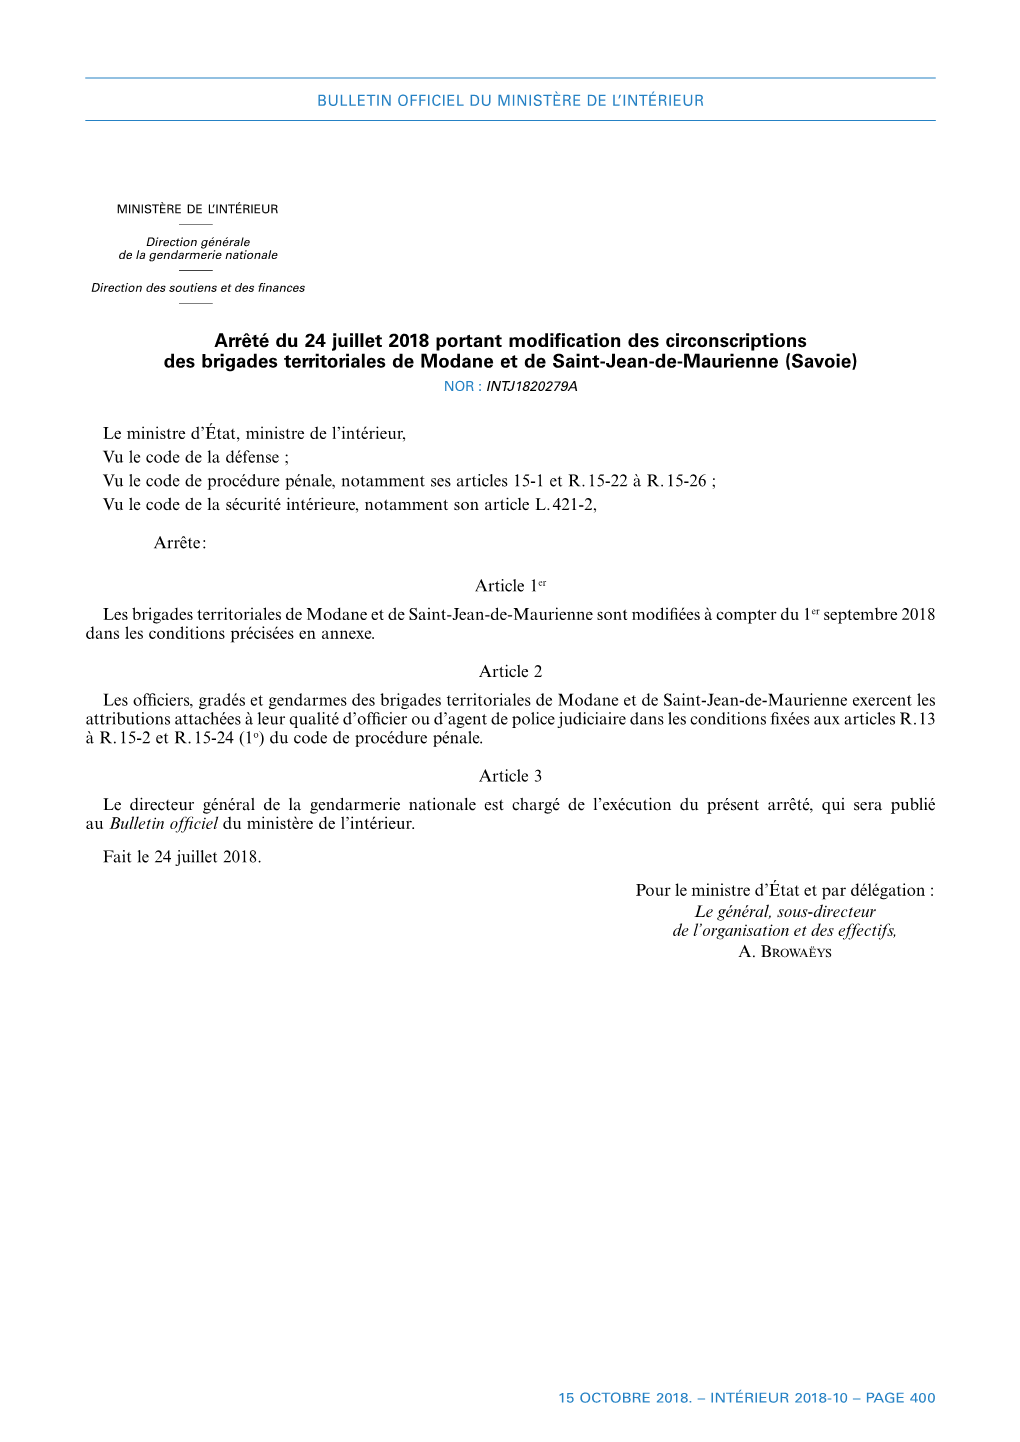 Arrêté Du 24 Juillet 2018 Portant Modification Des Circonscriptions Des Brigades Territoriales De Modane Et De Saint-Jean-D